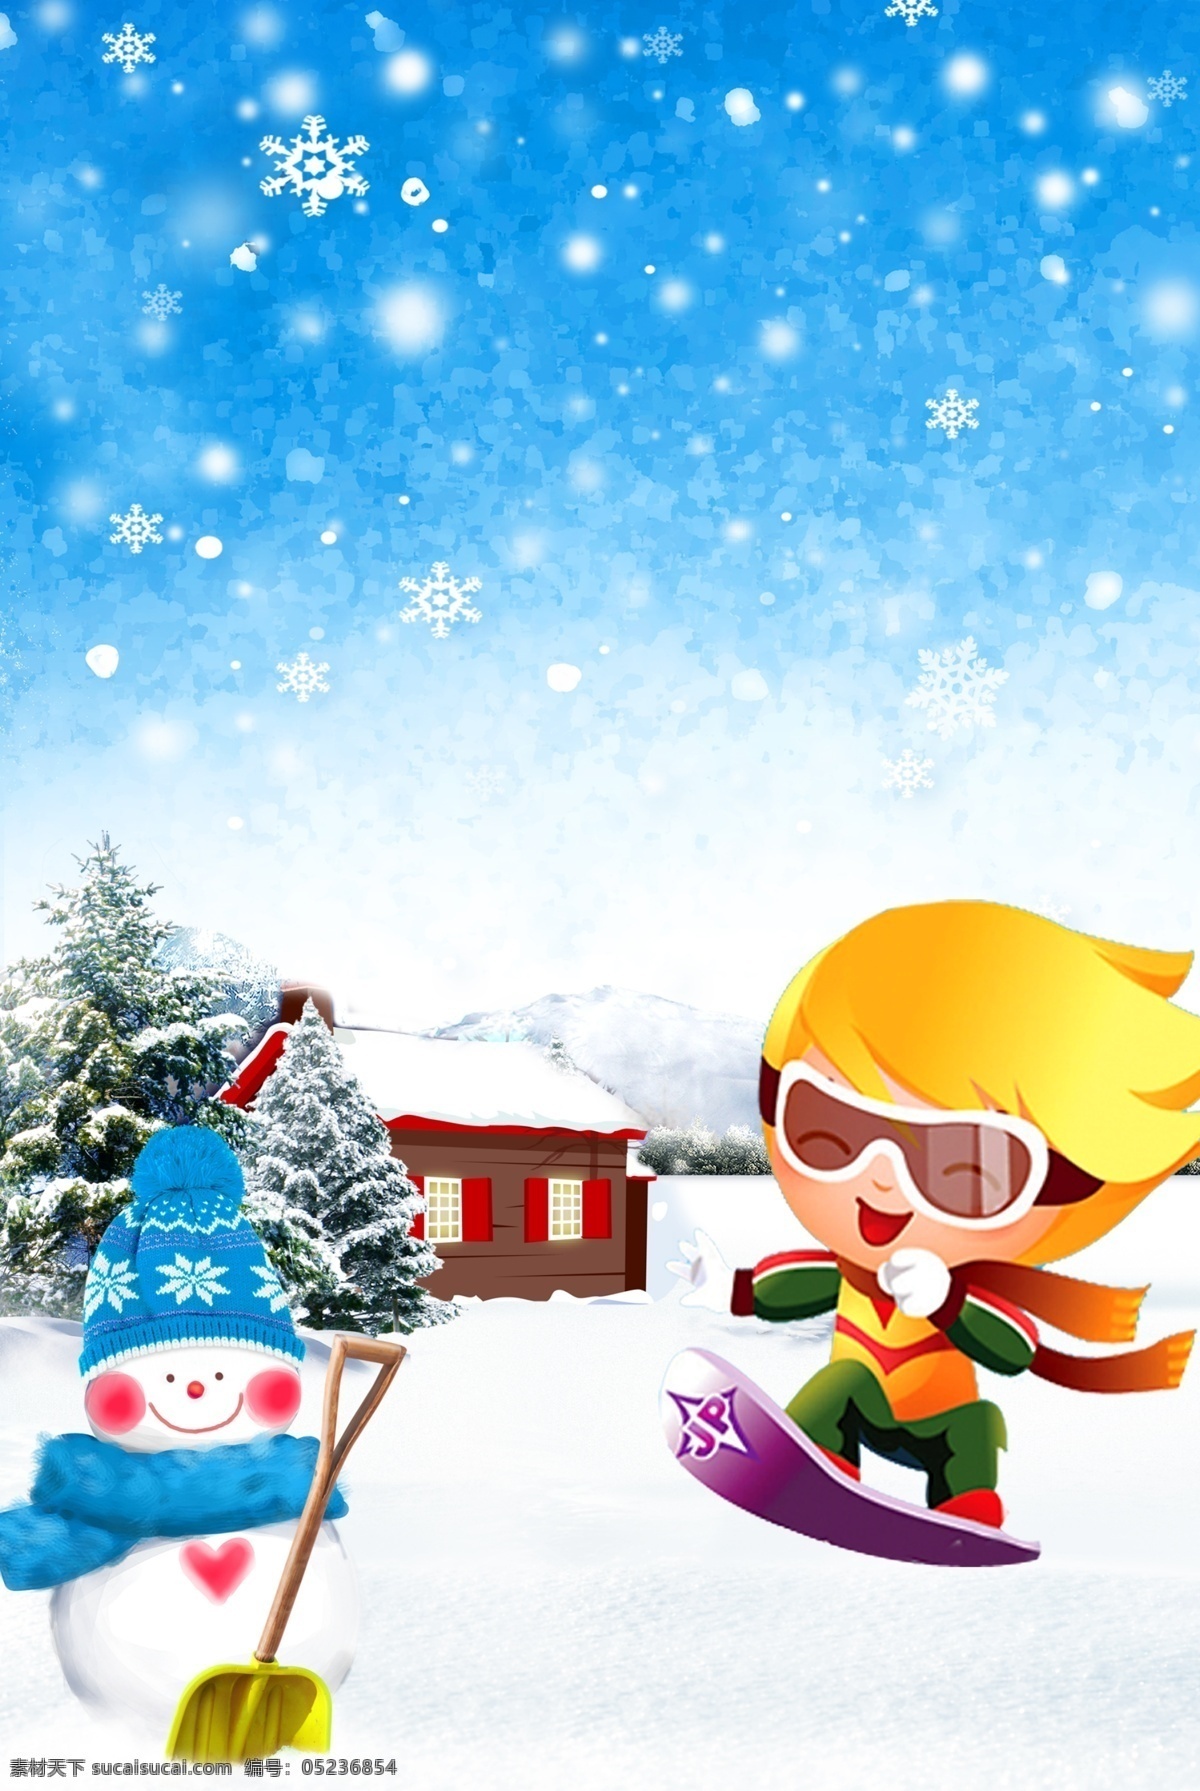 卡通背景 卡通素材 卡通人物 卡通风景 冬天 雪天 雪人 松树 下雪了 下雪 房子 滑雪 卡通 人物图库 儿童幼儿